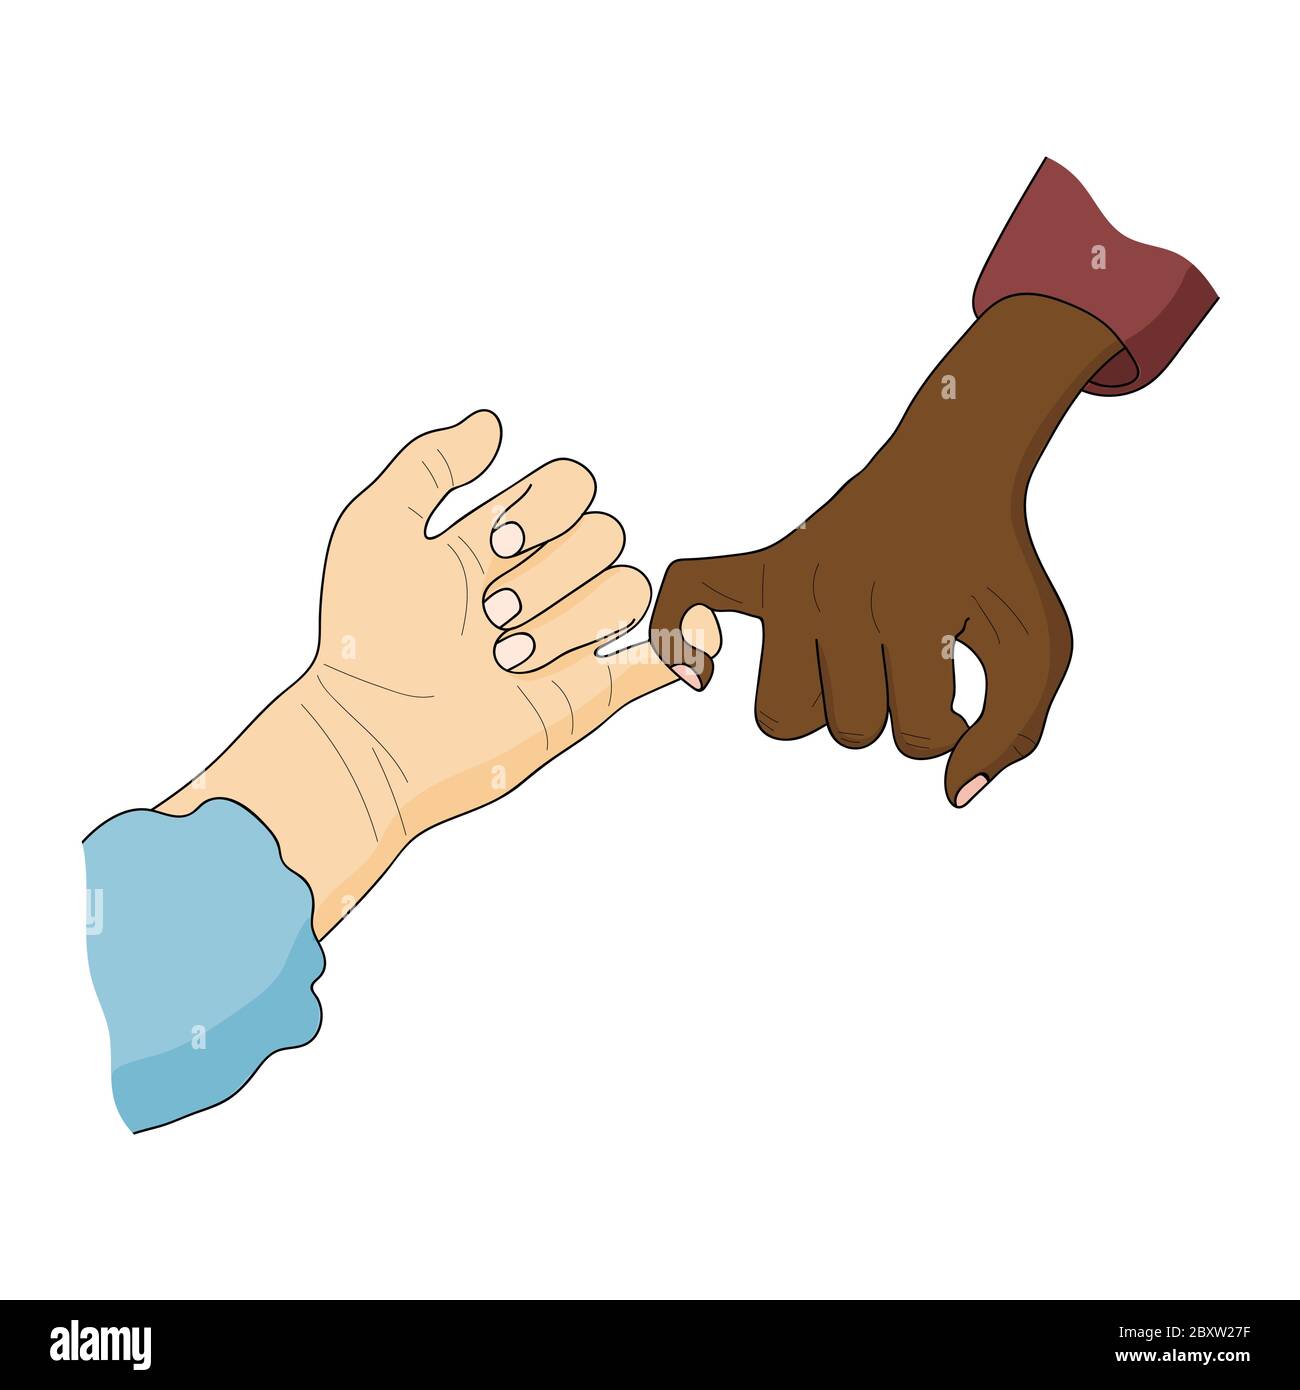 Pinky schwören. Weiße und schwarz-häutige Hände. Antirassismus, Antidiskriminierung, Friedenskonzept. Cartoon Vektor Illustration. Stock Vektor